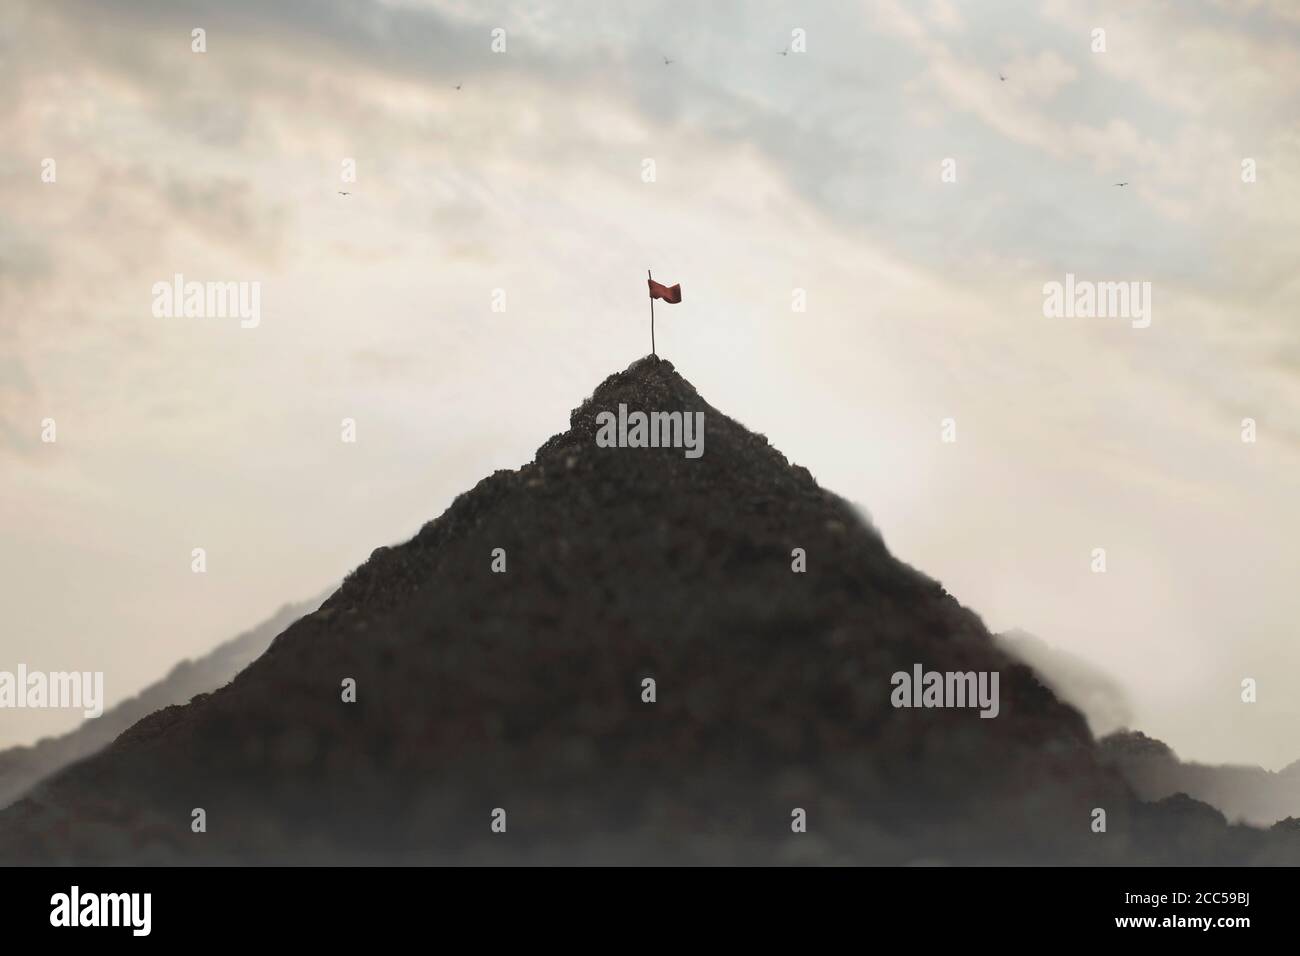 Flagge auf einem Berg gepflanzt, Erfolgskonzept Stockfoto